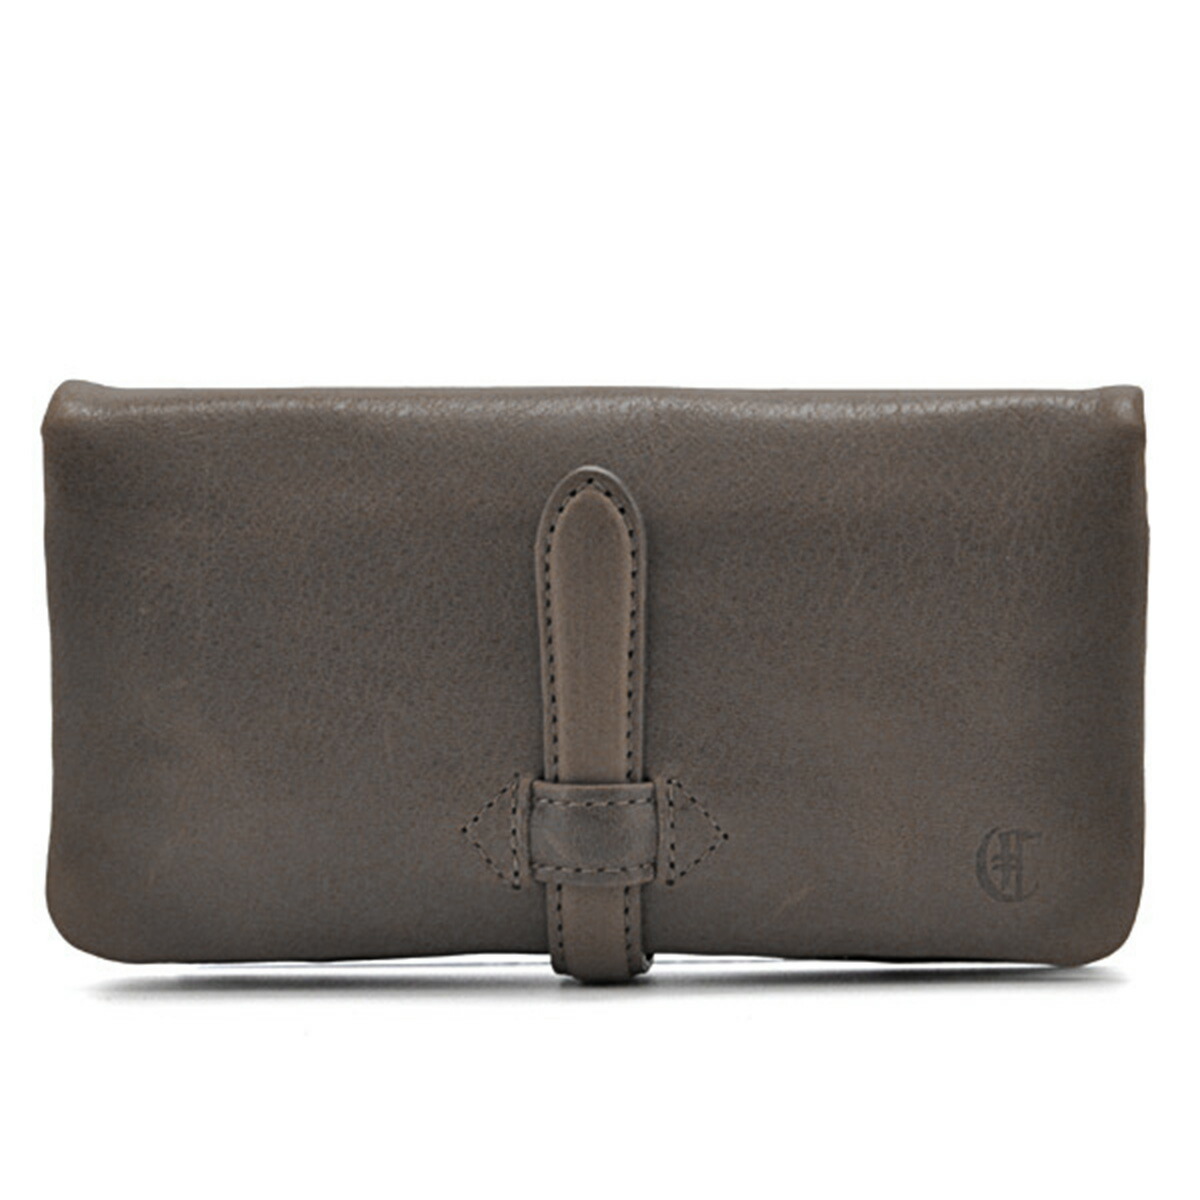 ホットセール 長財布 ベルト付き ADORE S6219 日本製 WALLET(L) CLEDRAN 財布 クレドラン 財布、帽子、ファッション小物 